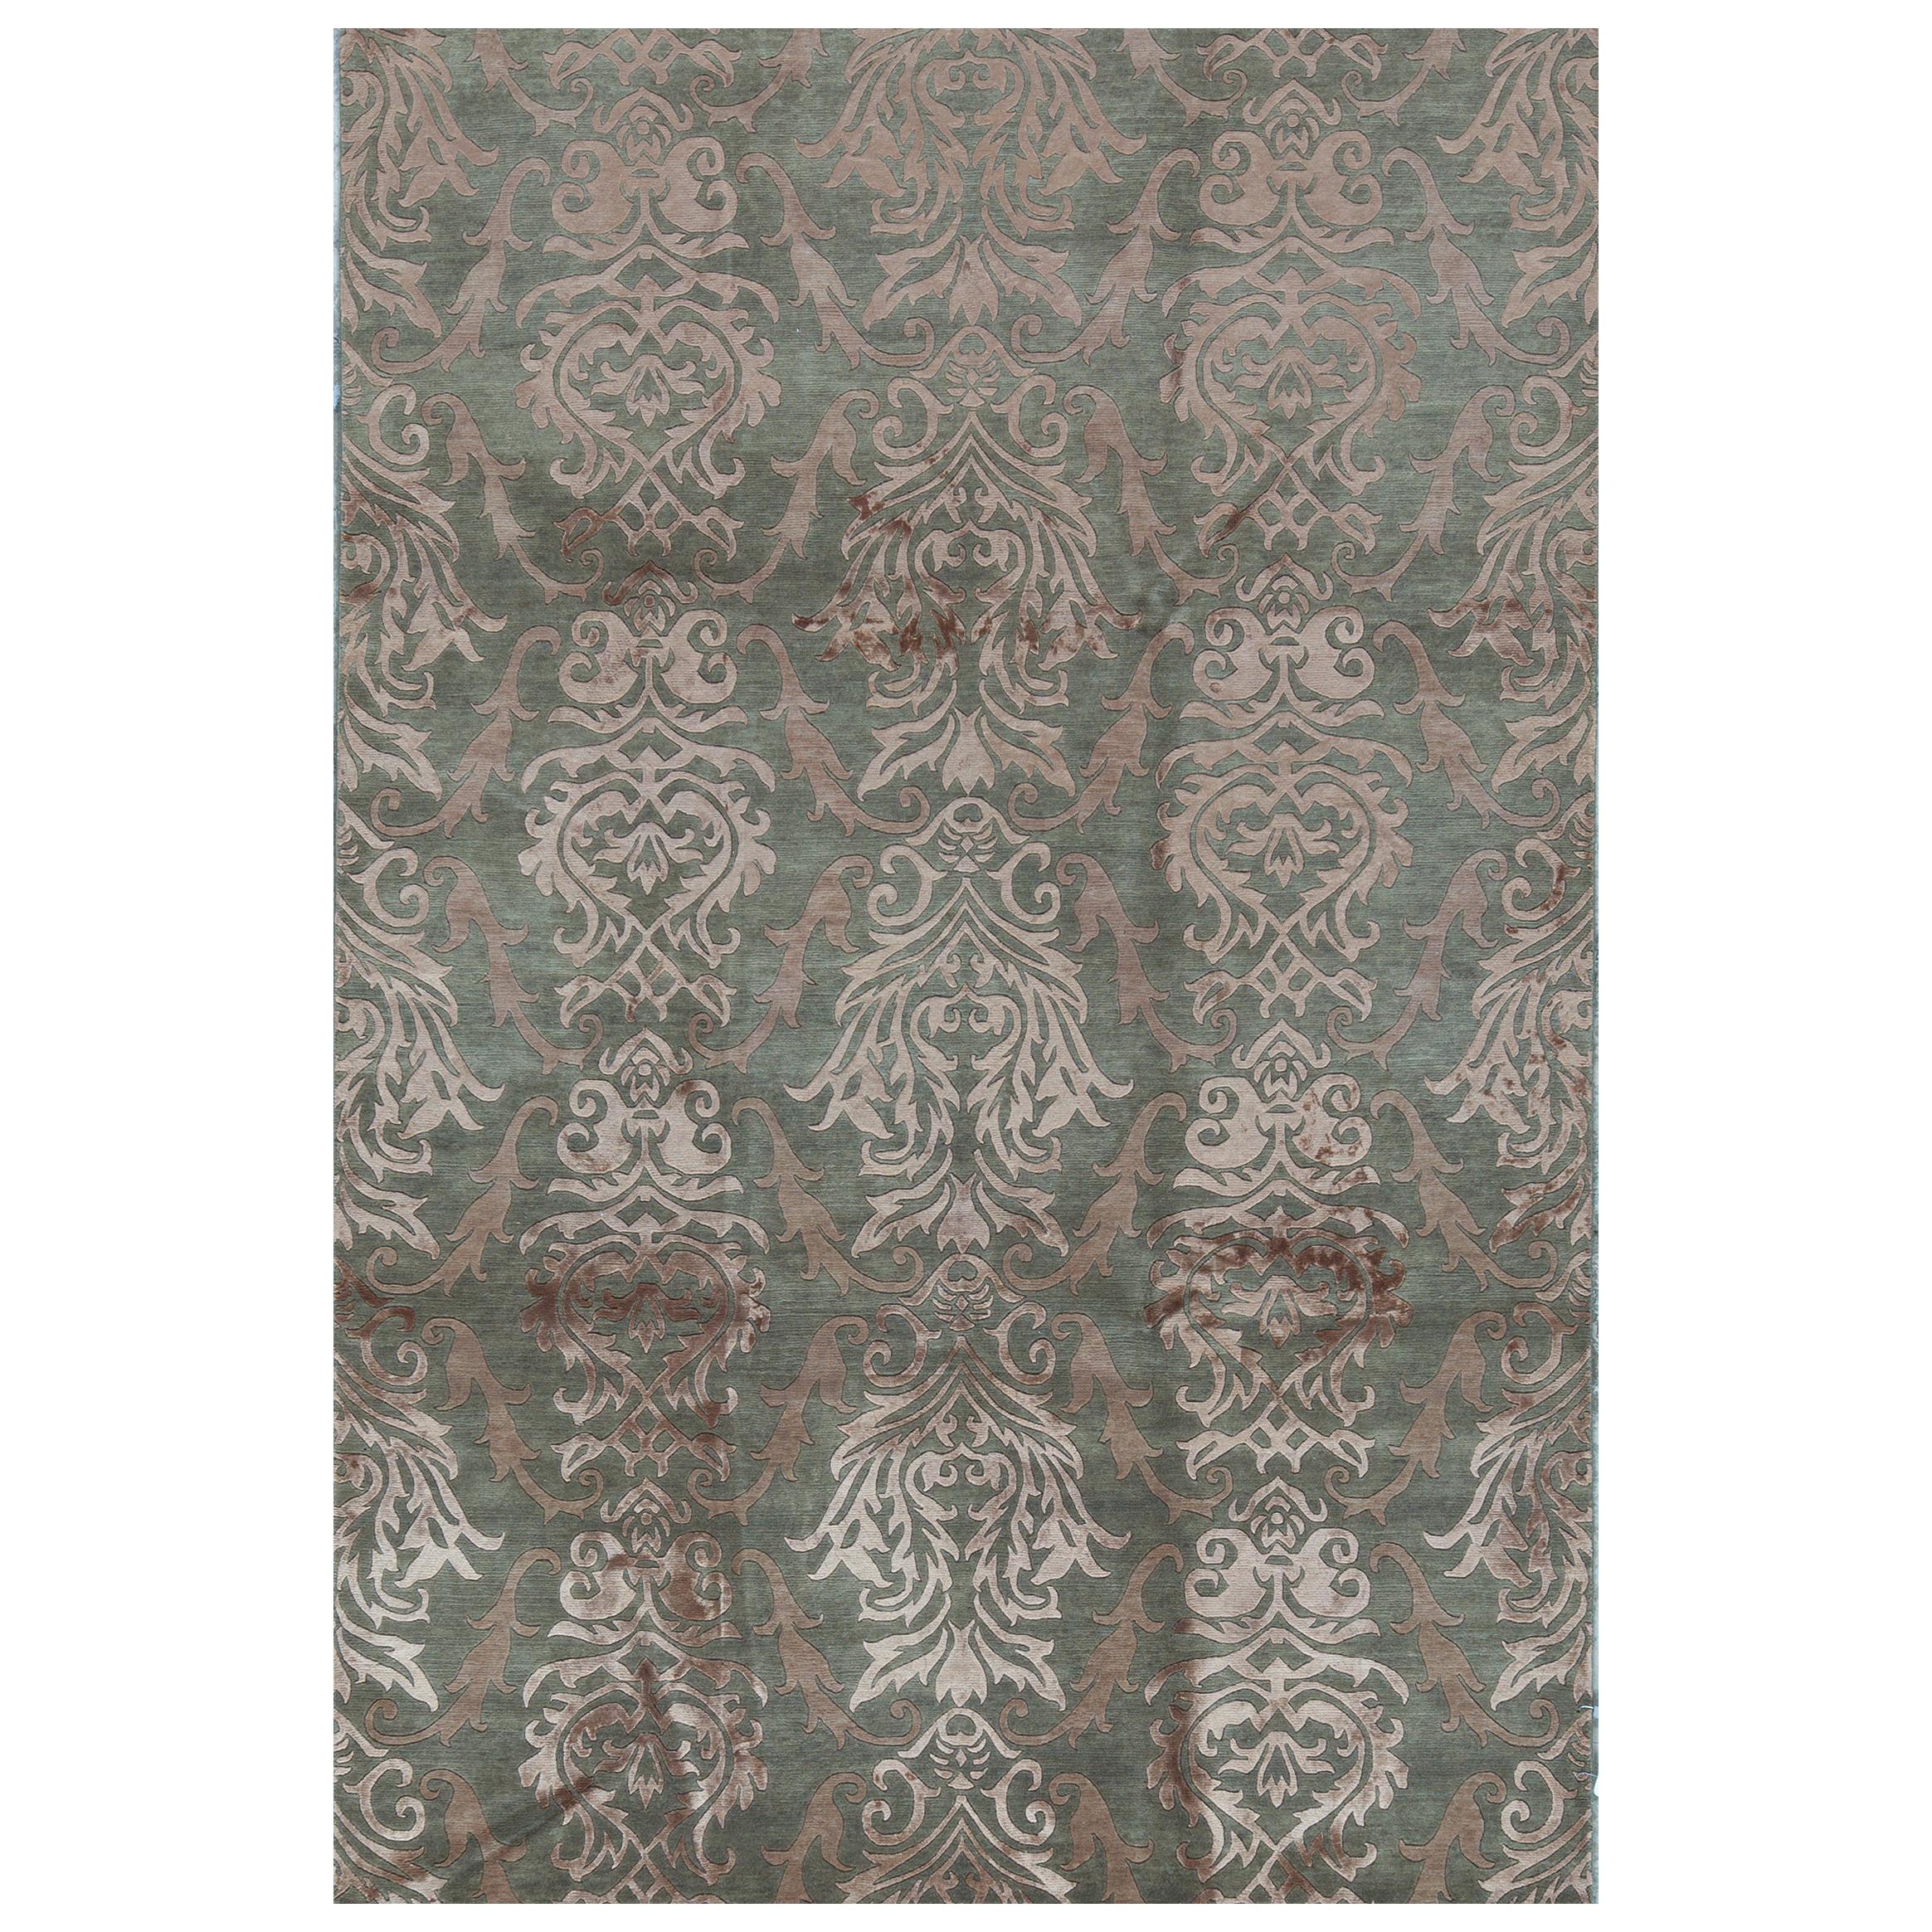 Zeitgenössischer handgewebter Teppich aus Wolle, Unikat  6' x 9'2